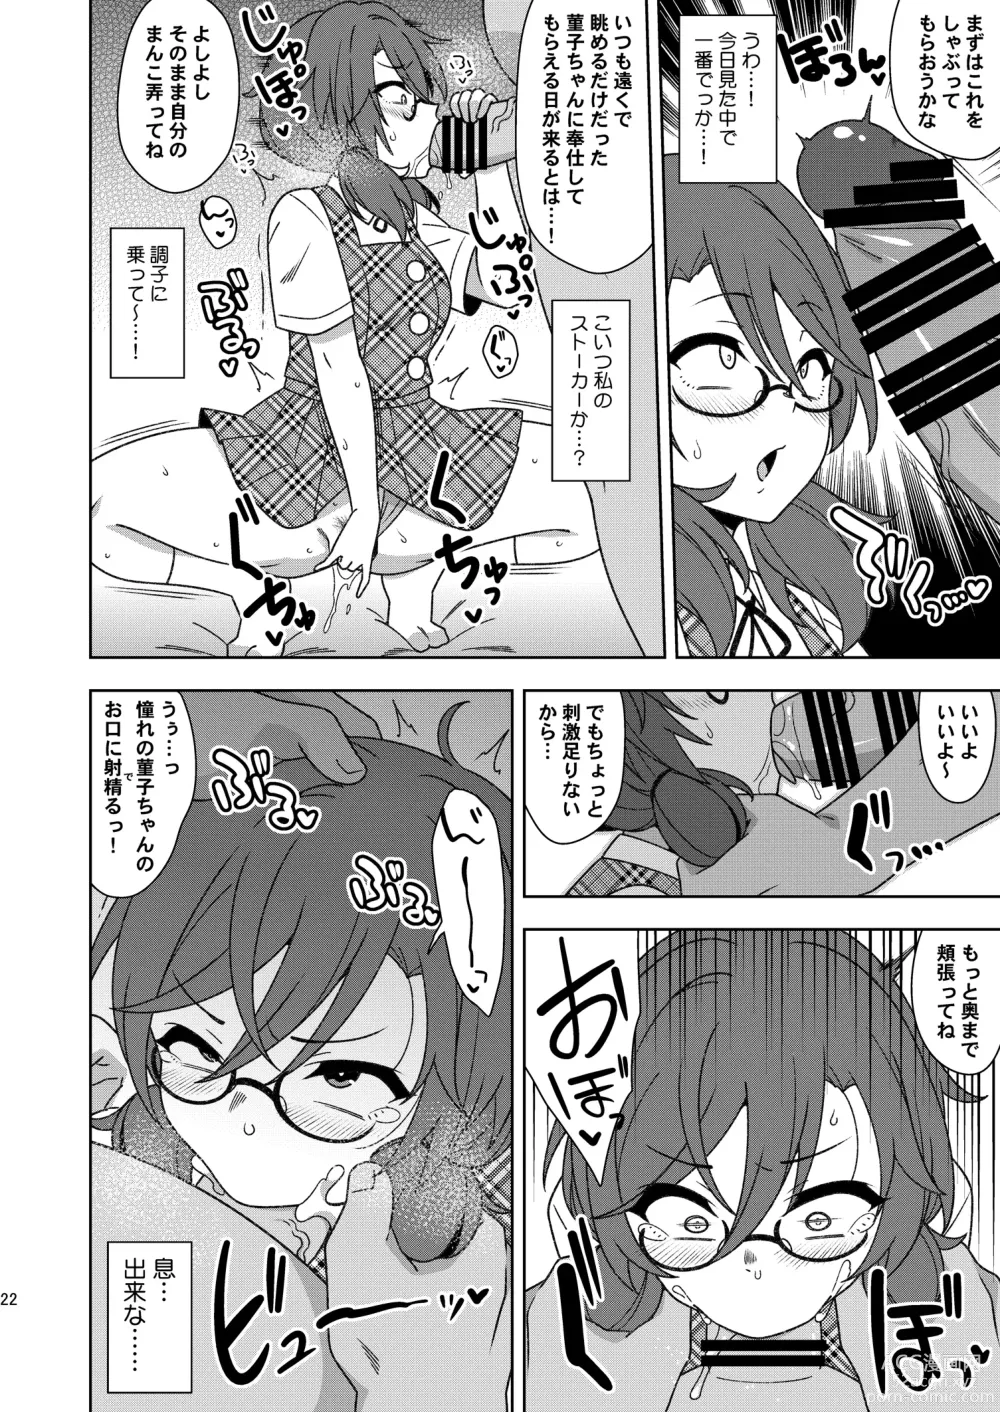 Page 21 of doujinshi Korewa kitto yumedakara!